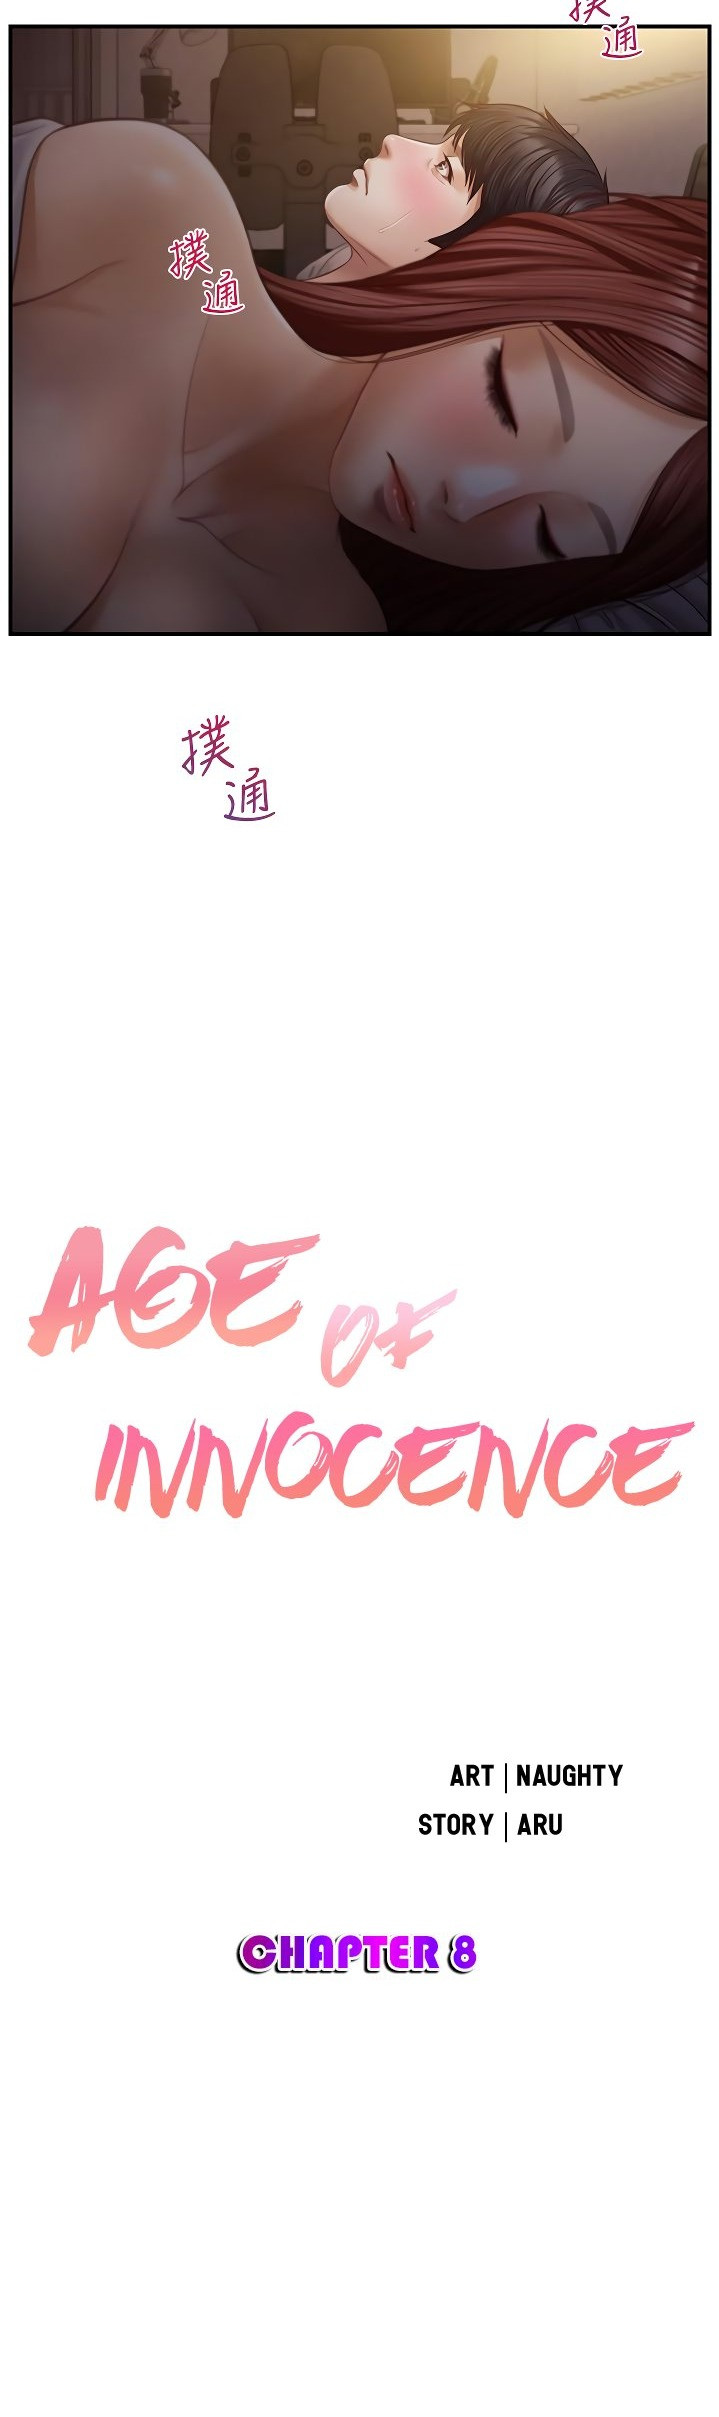 The image Age Of Innocence - Chapter 08 - zq7FMng1Mt3ezmW - ManhwaManga.io